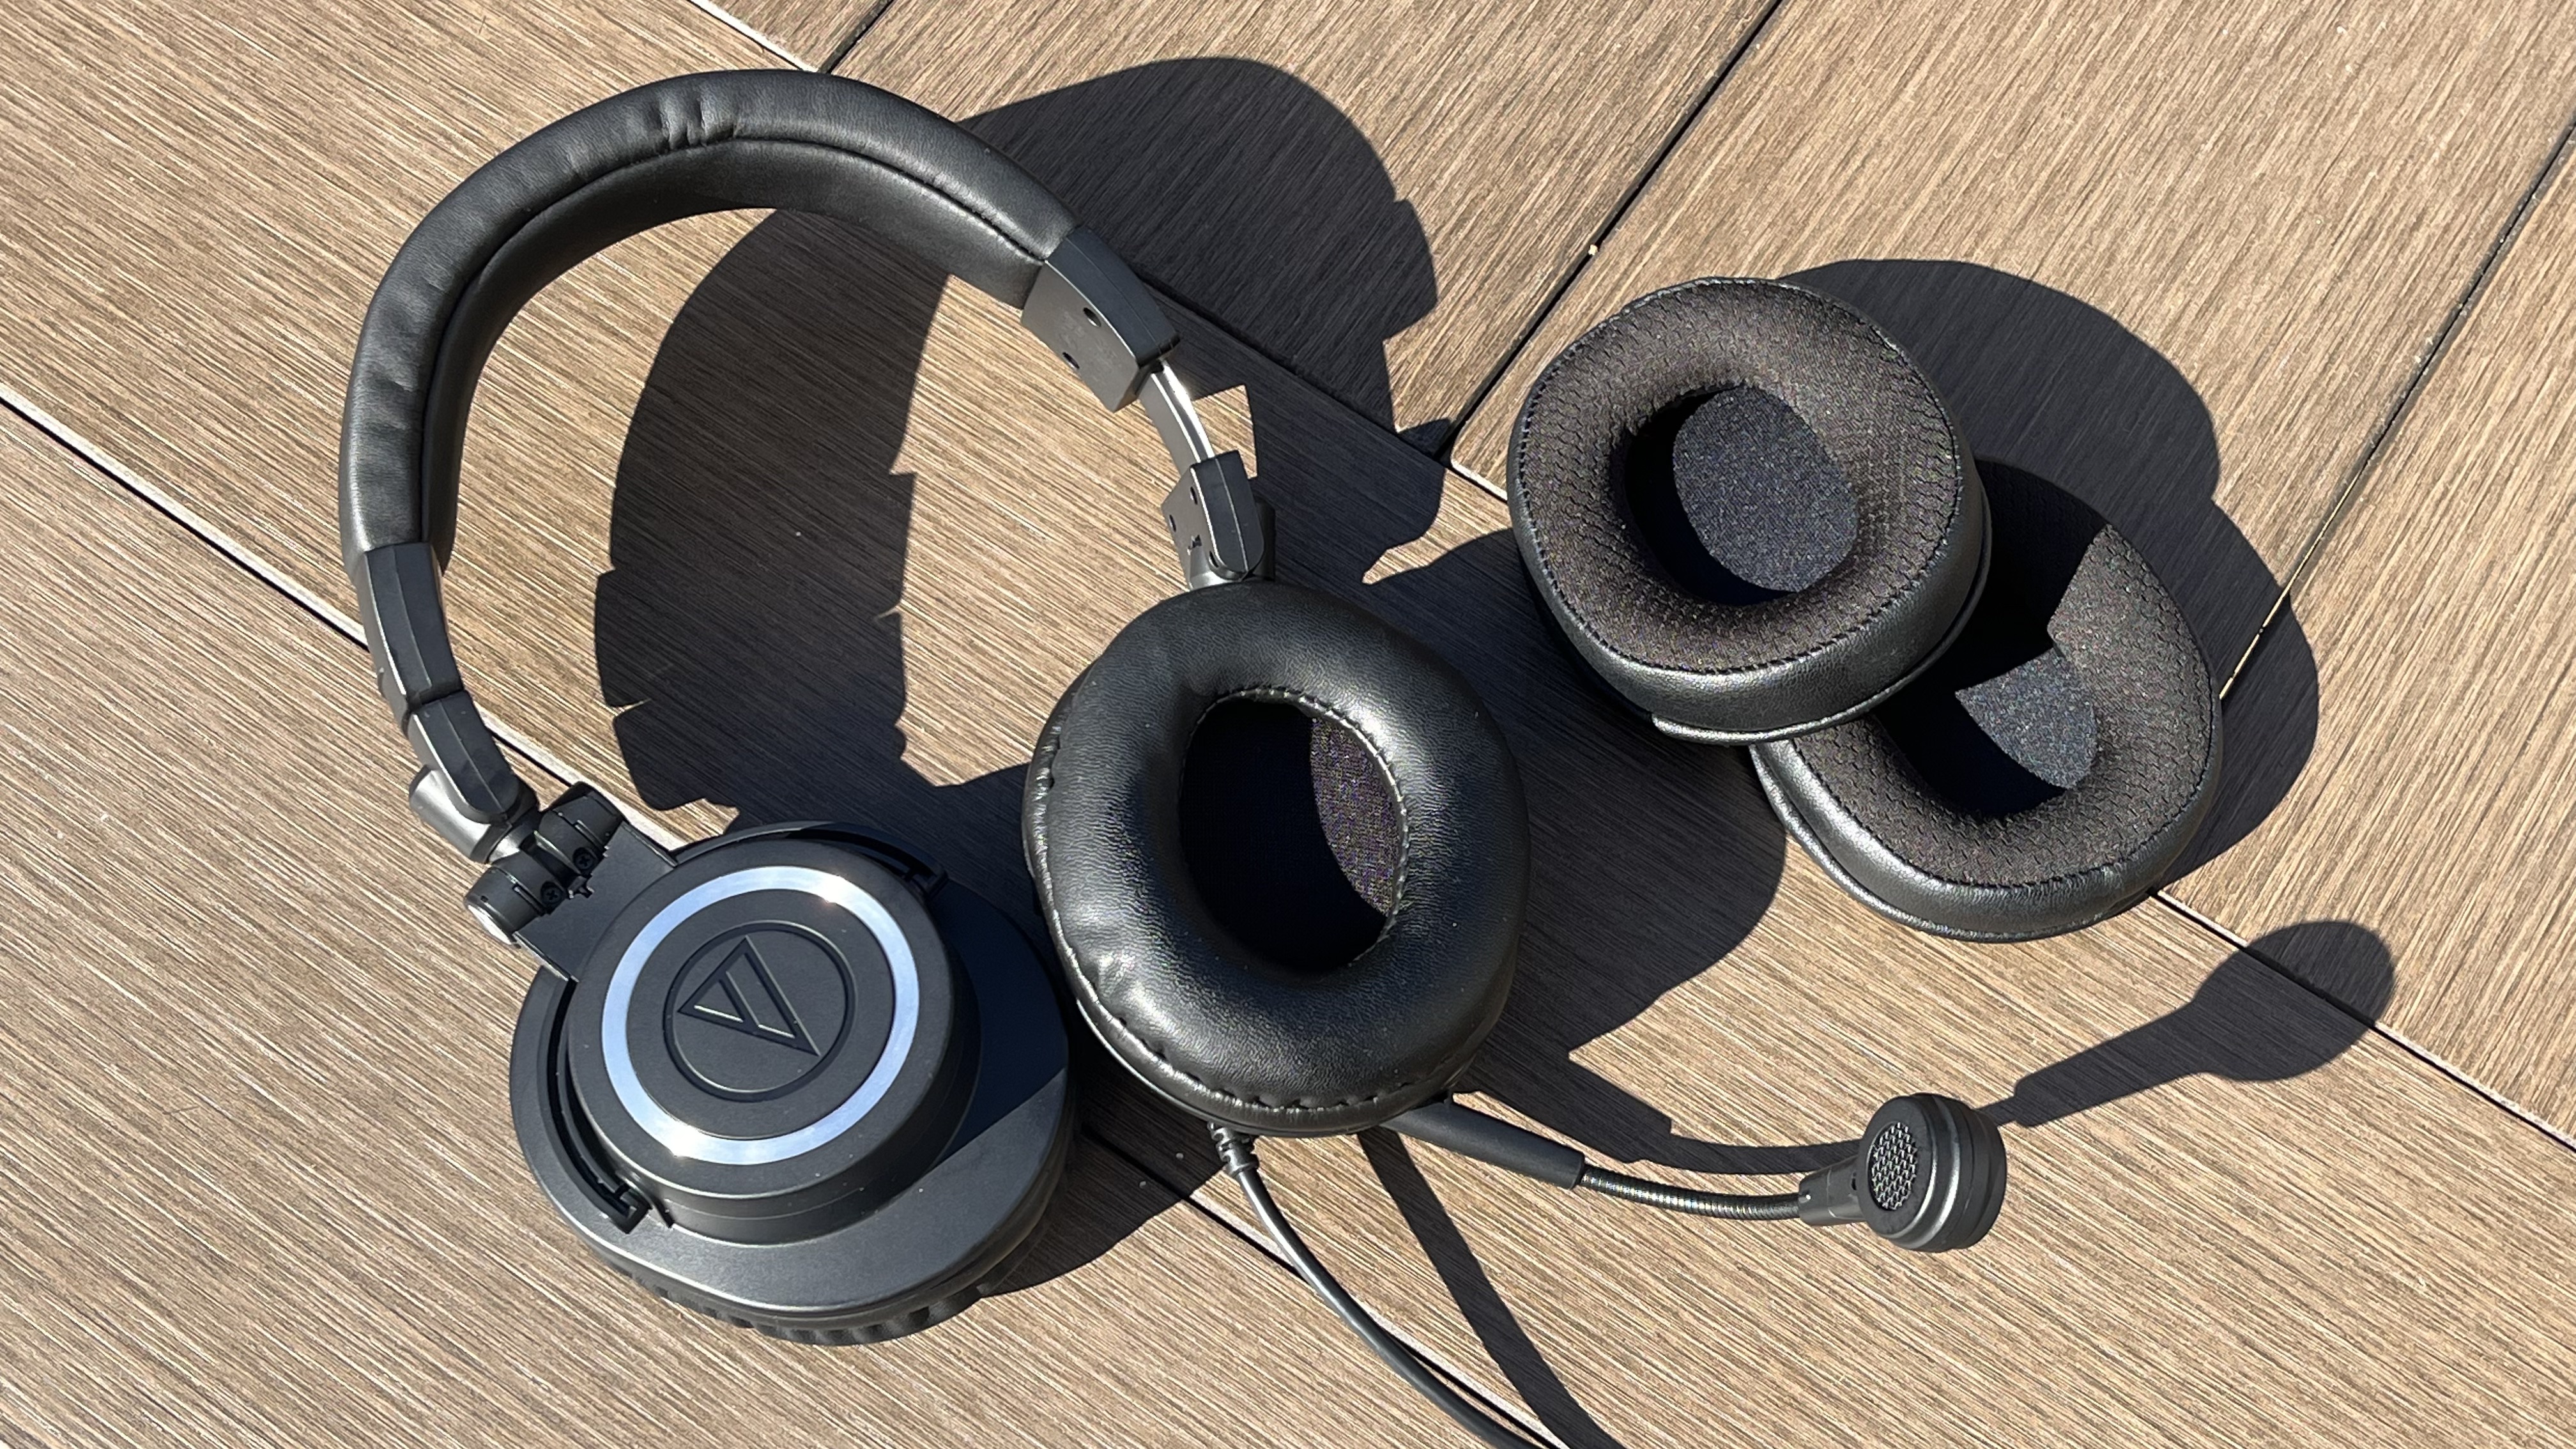 Audio Technica ATH-M50xSTS, análisis. Review, características y precio